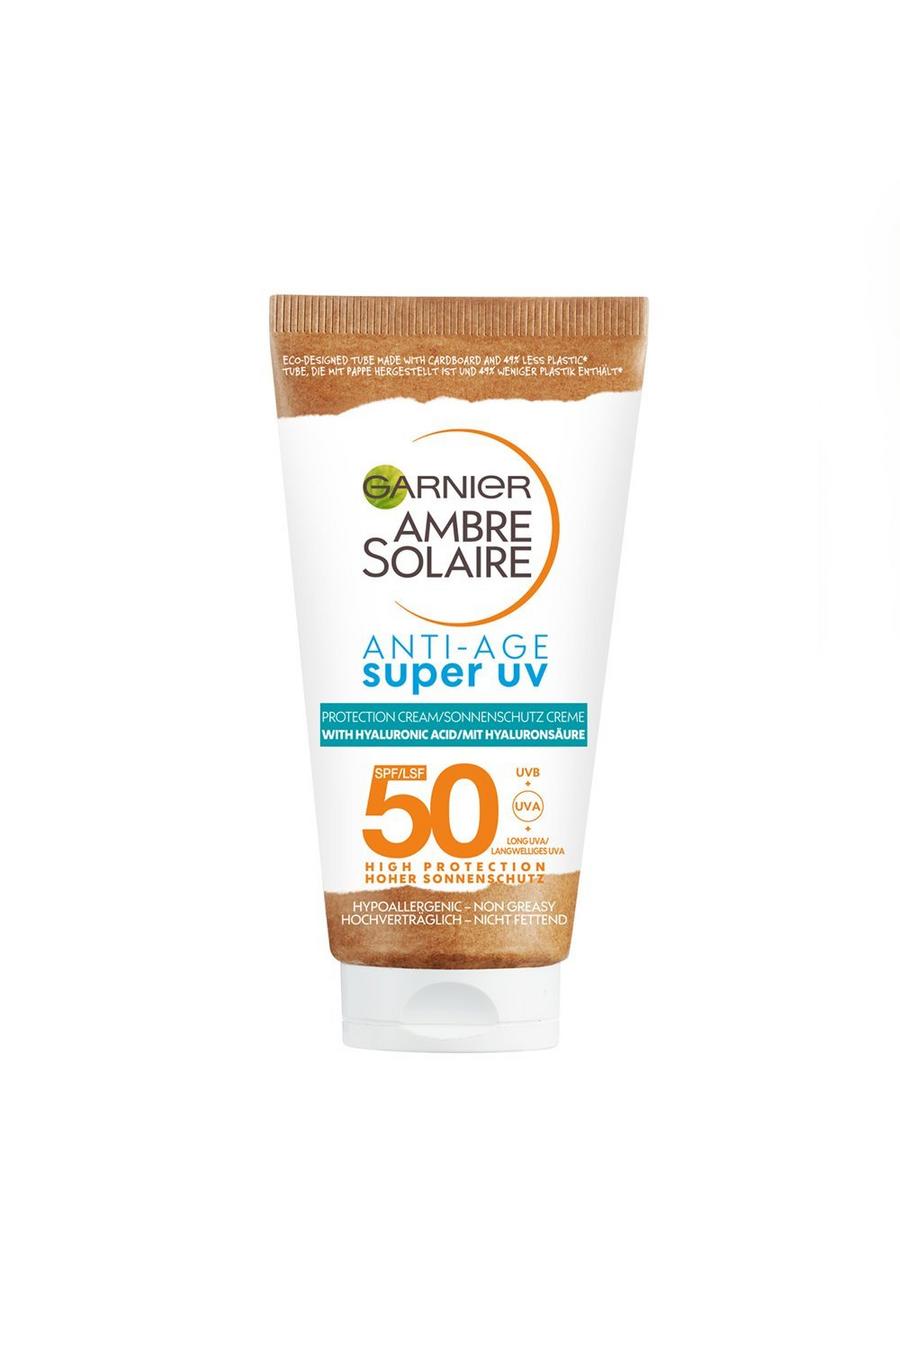 White blanco Garnier Ambre Solaire Anti-age Super UV Face Protection Cream SPF50 50ml (SAVE 17%)